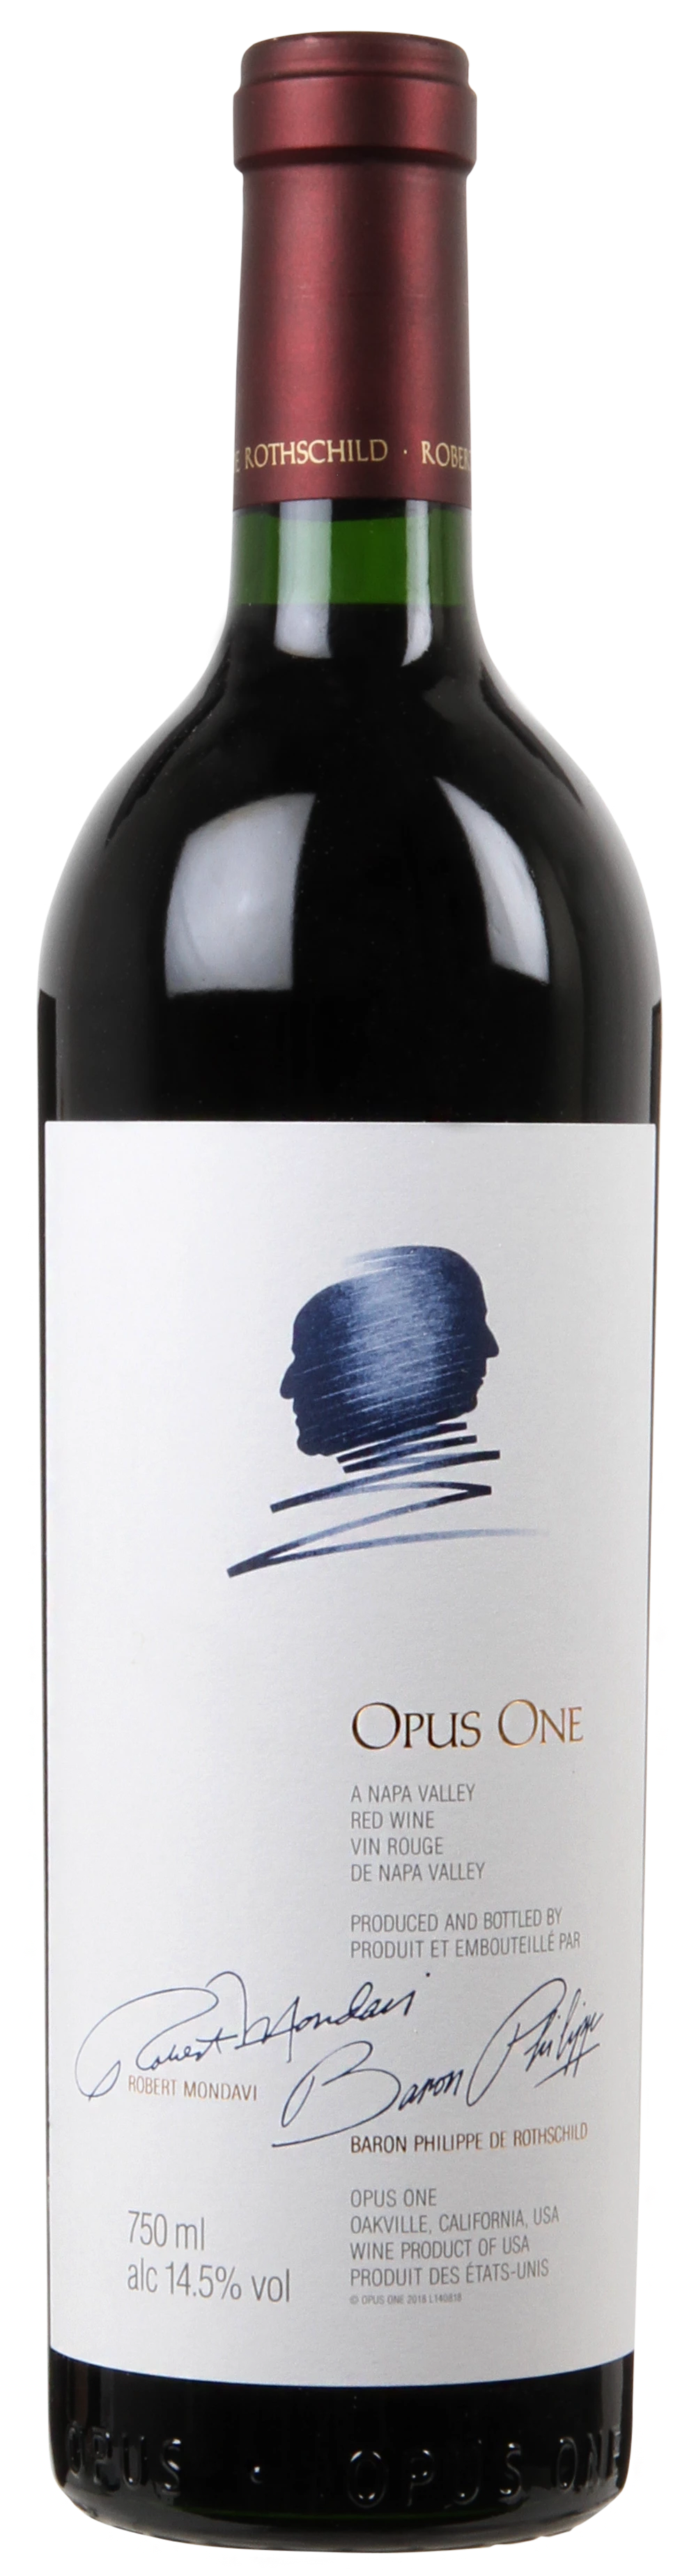 Løgismose Rødvin Opus One Winery Napa Valley Opus One 2016 - 214991